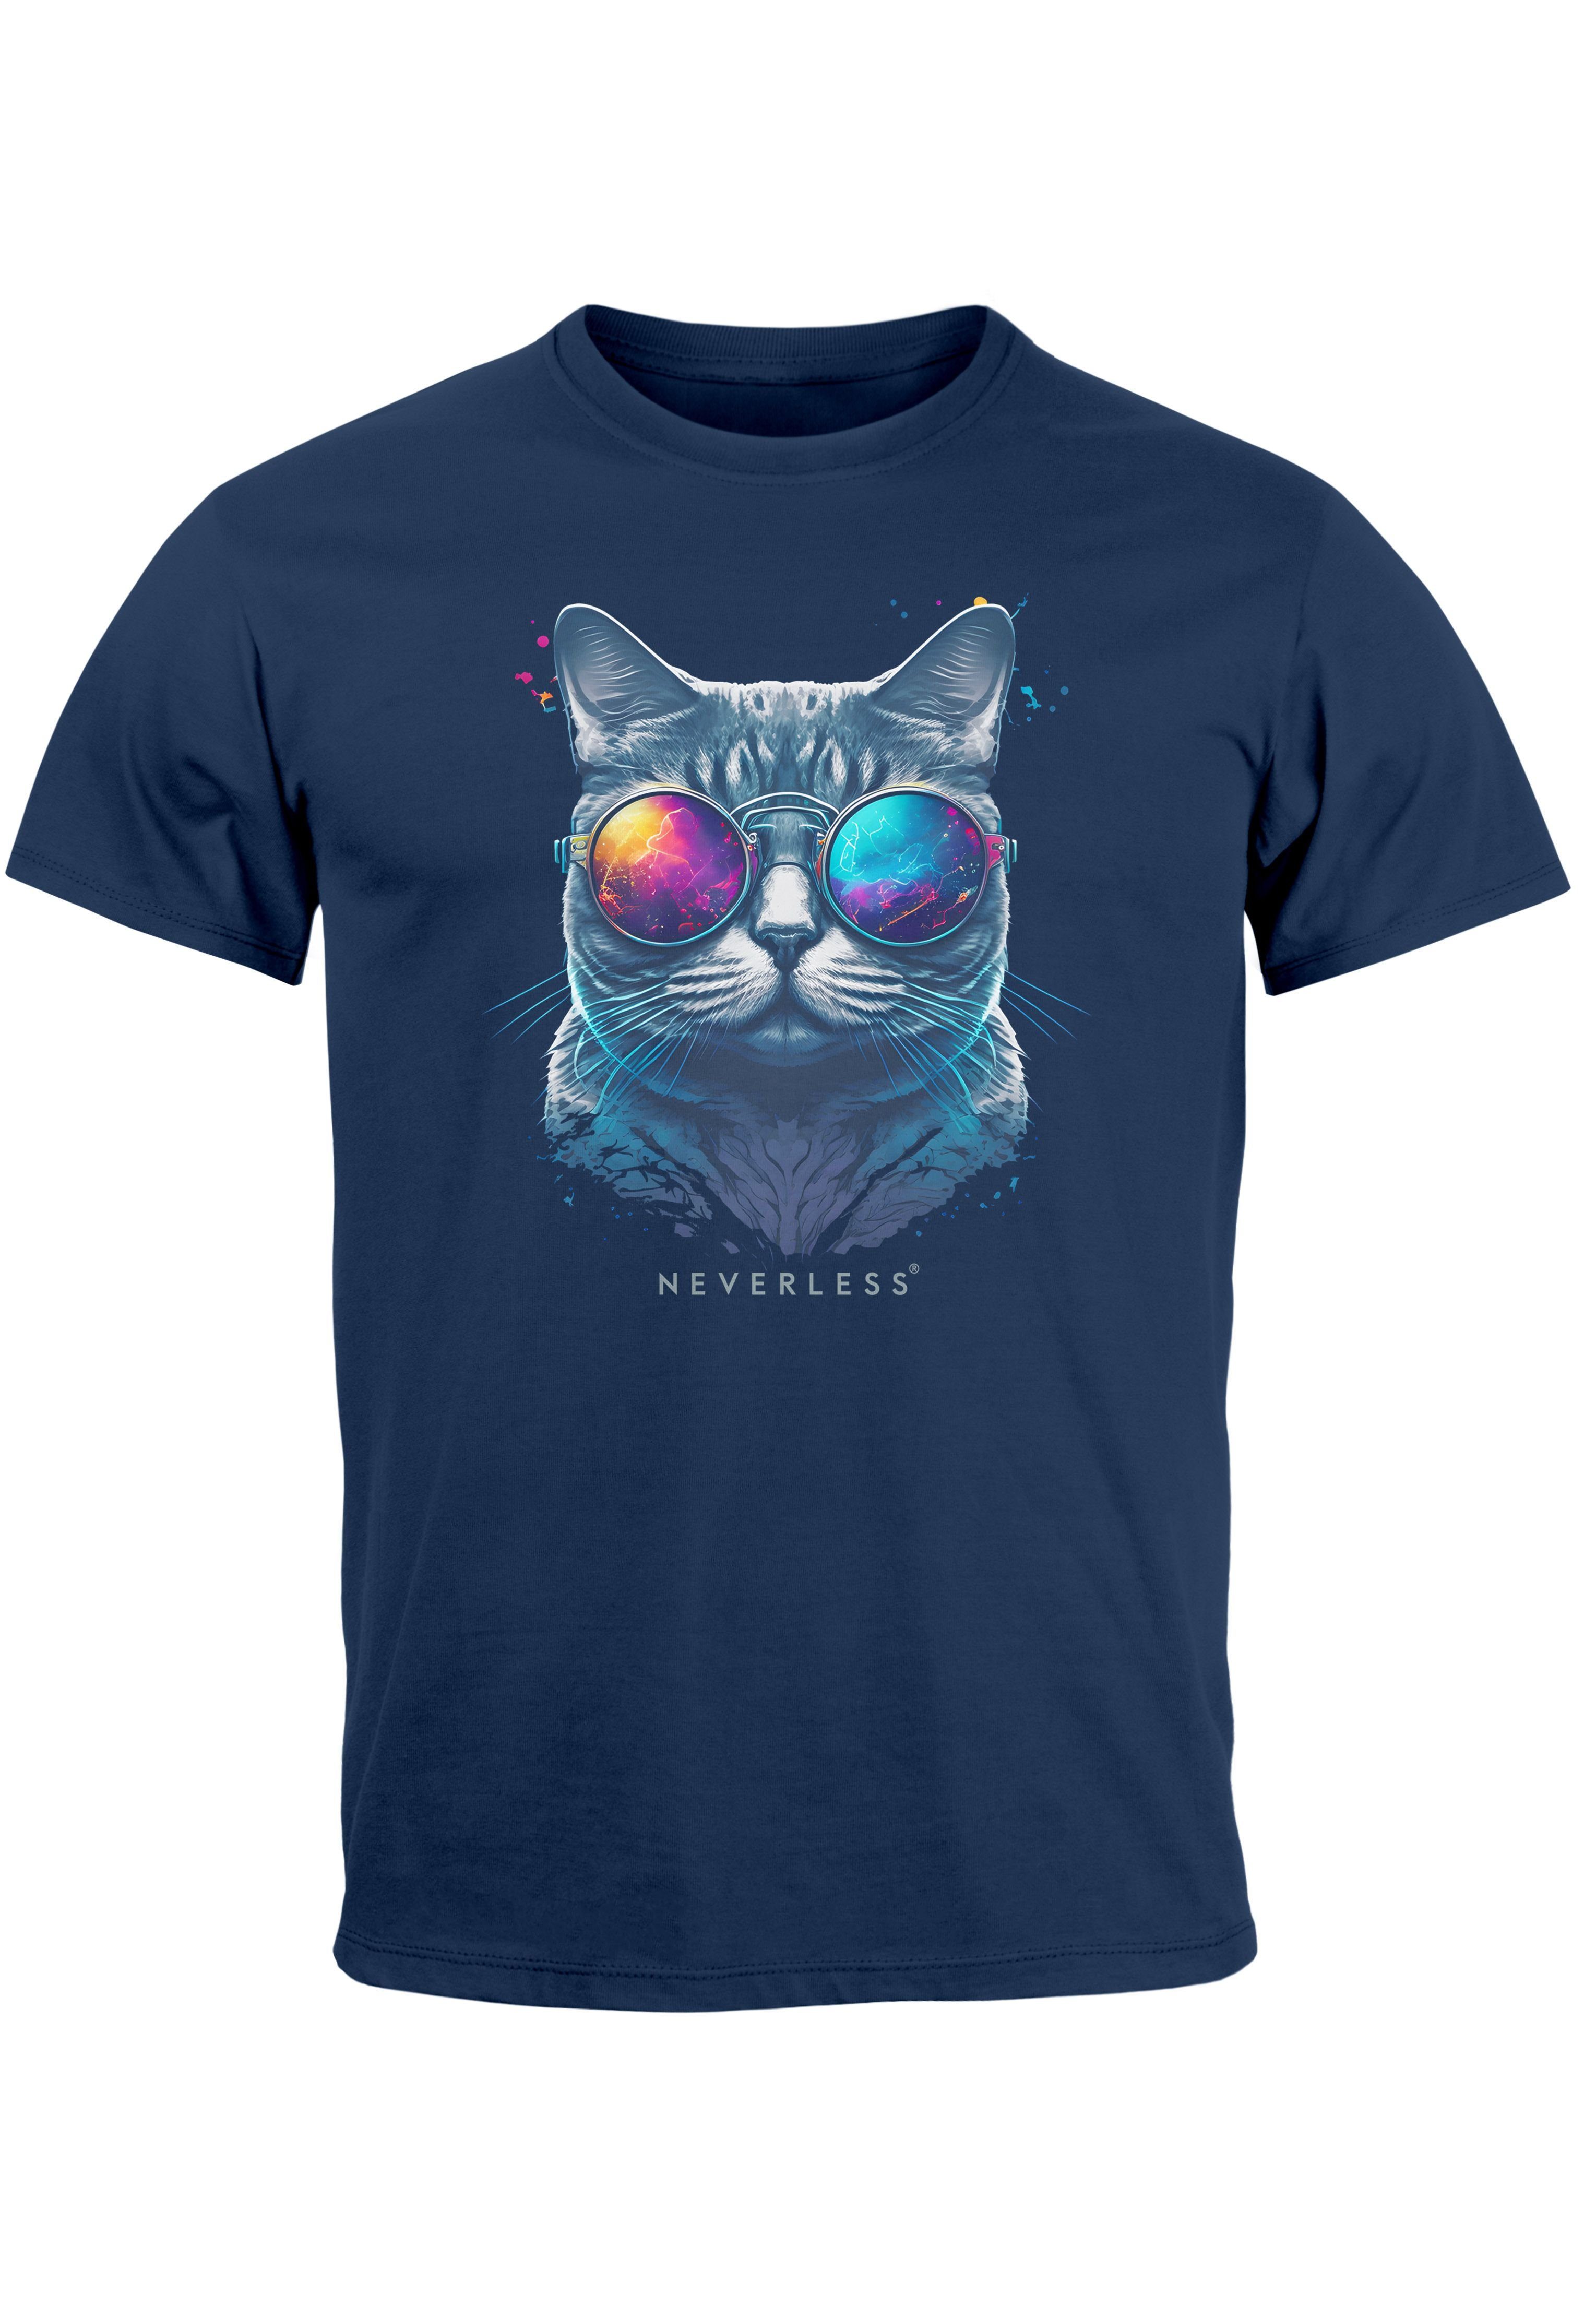 Aufdruck navy T-Shirt Herren mit Katze Cat Style Sommer Print-Shirt Fashion Print Pr Neverless Sonnenbrille